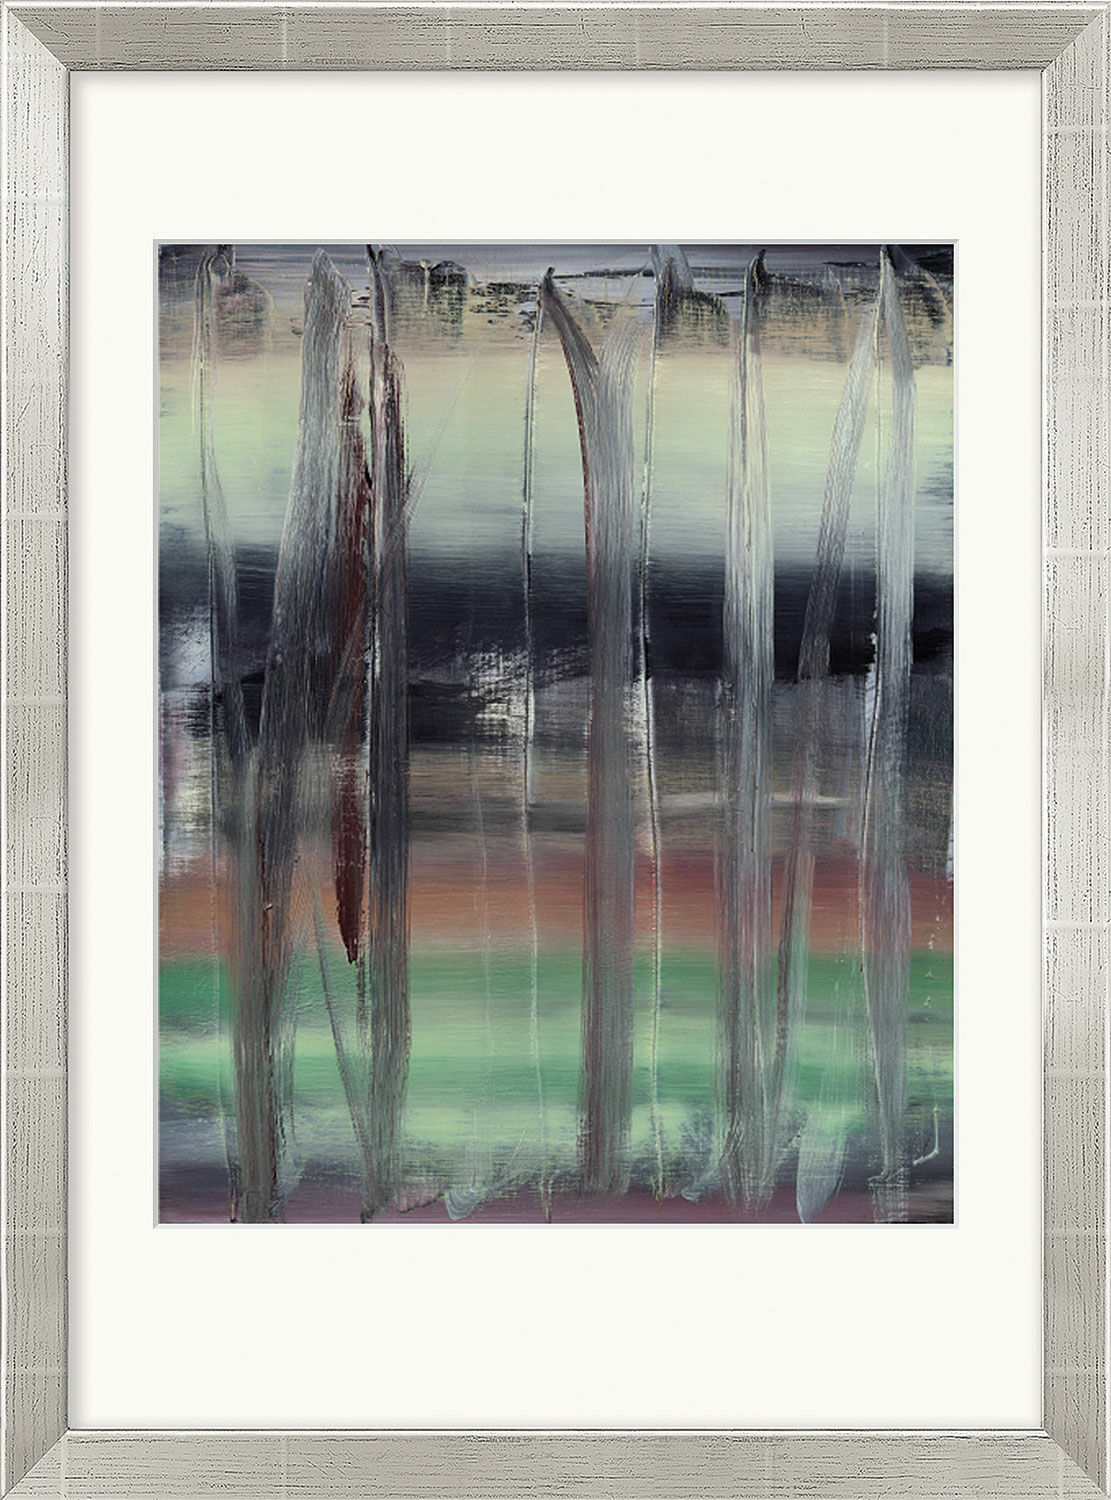 Tableau "Tableau abstrait" (1992), encadré von Gerhard Richter